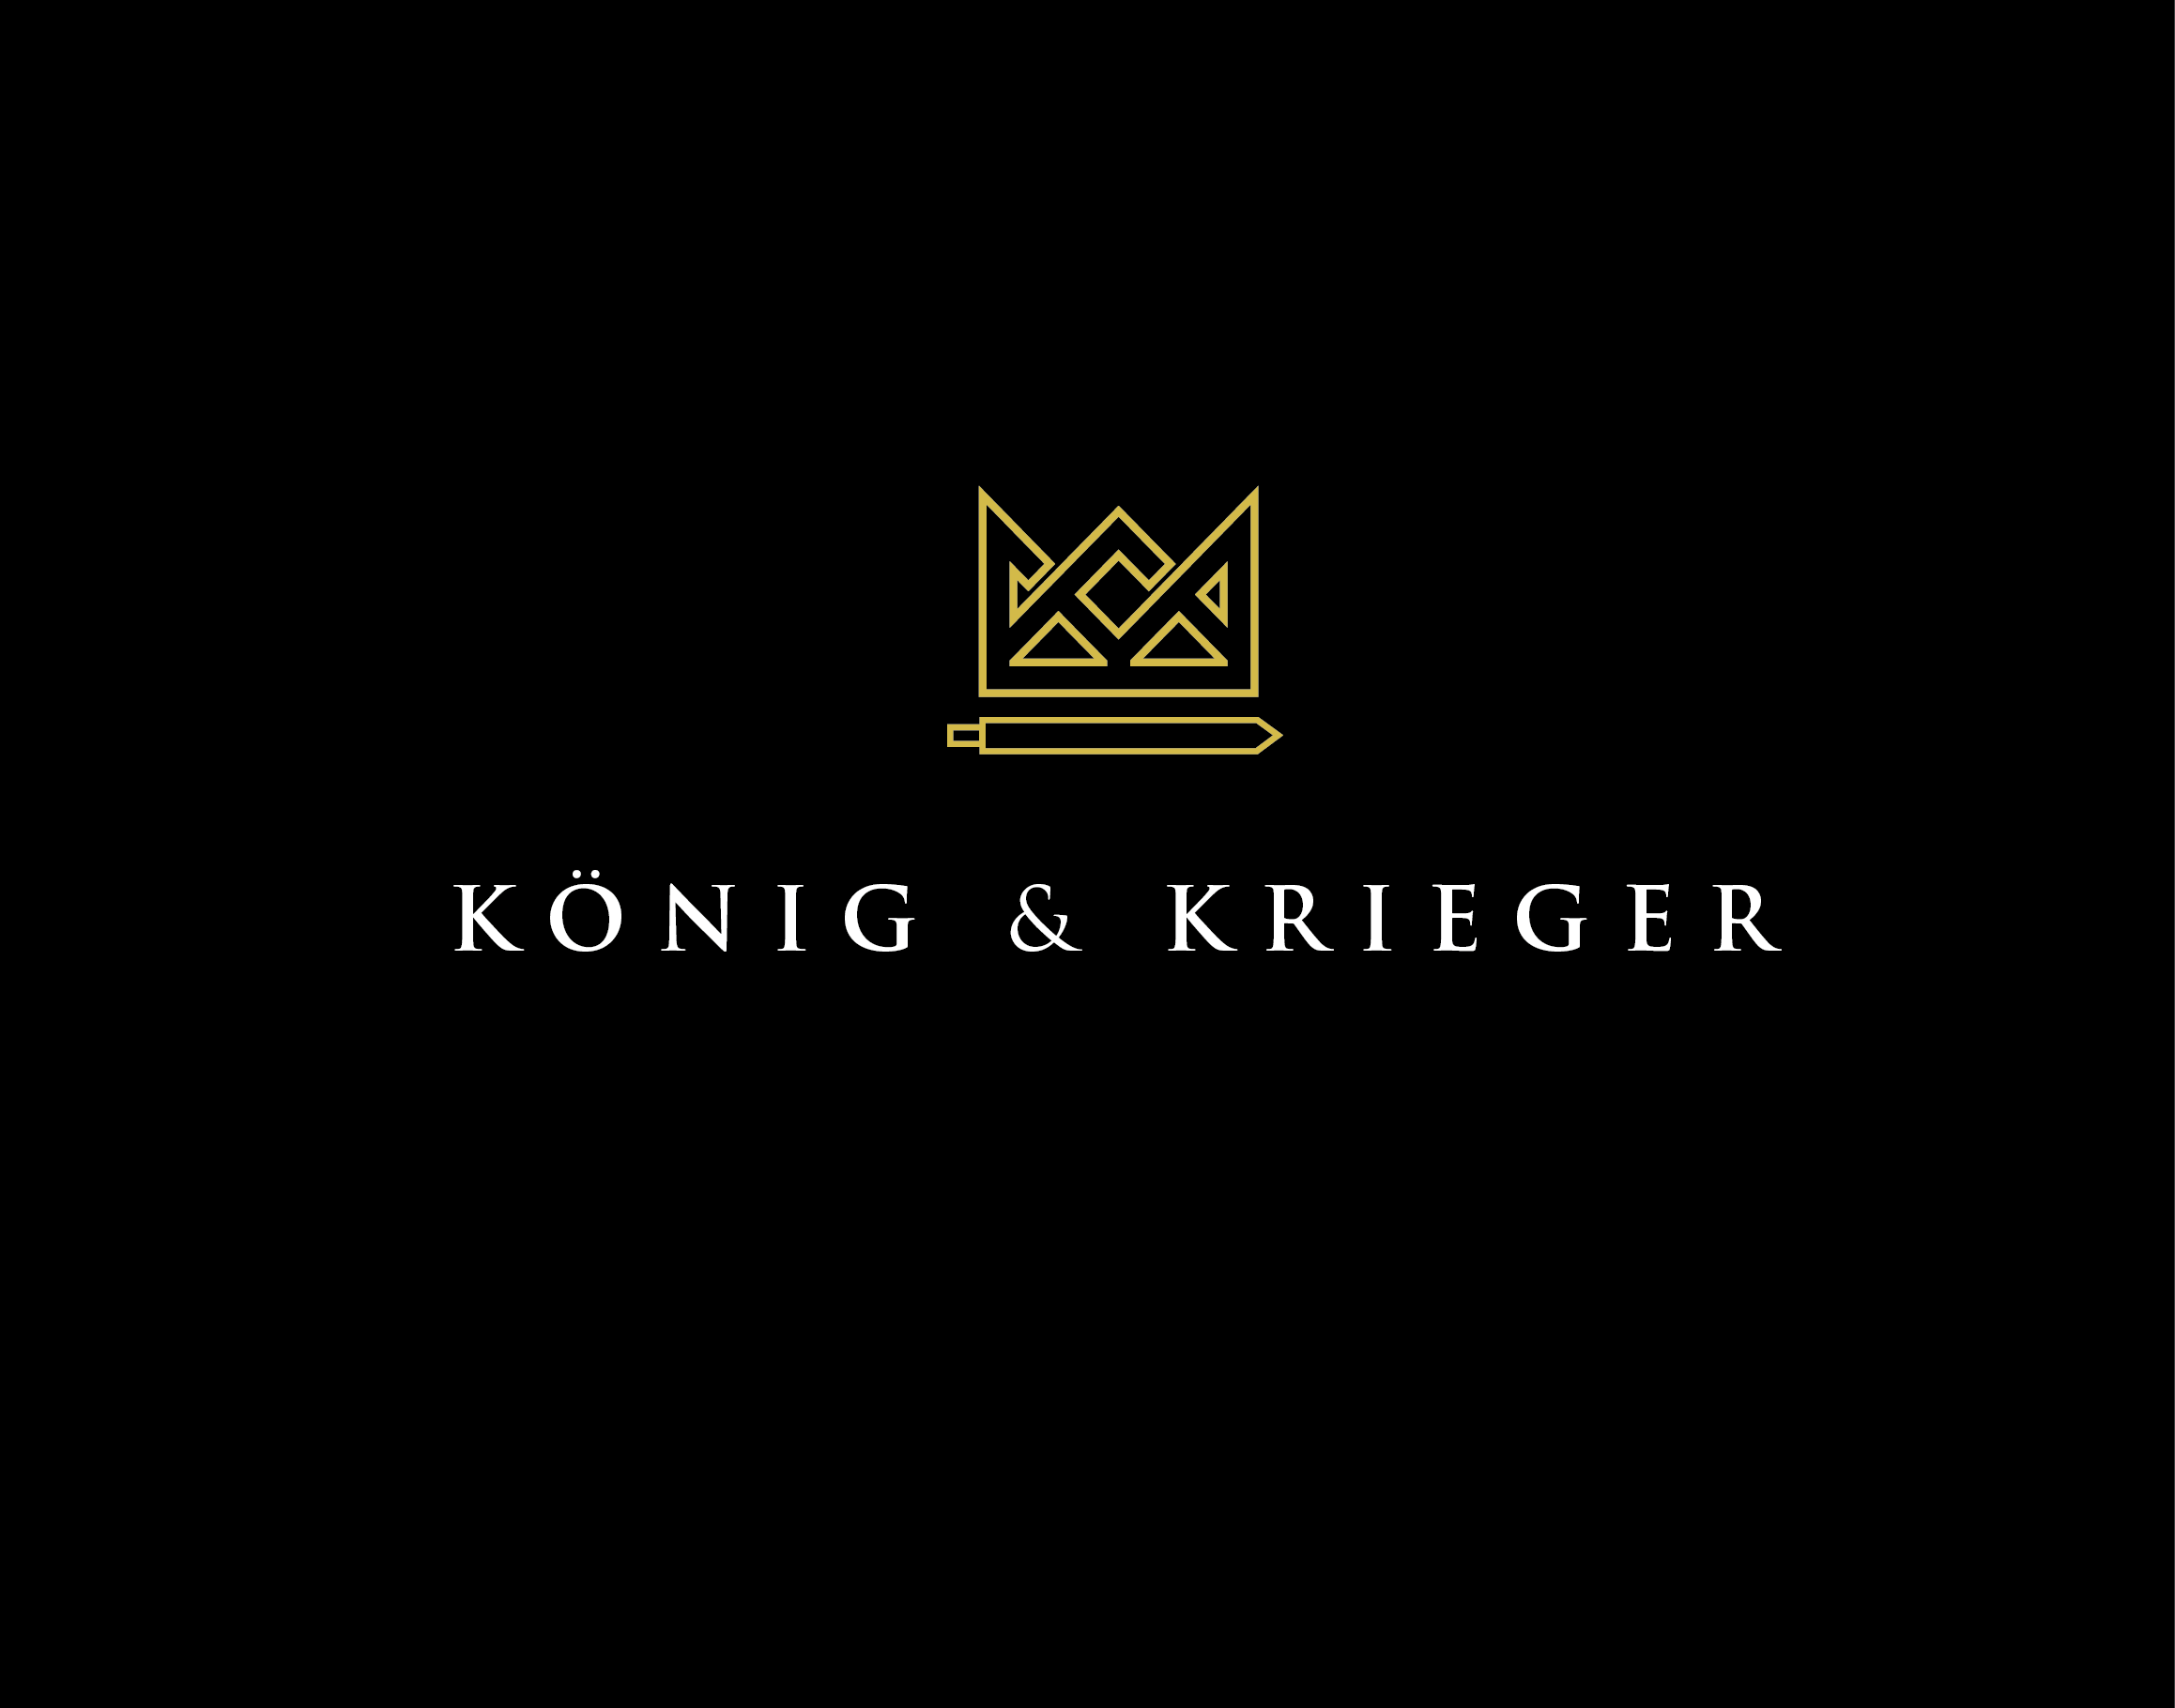 König & Krieger alkoholfrei